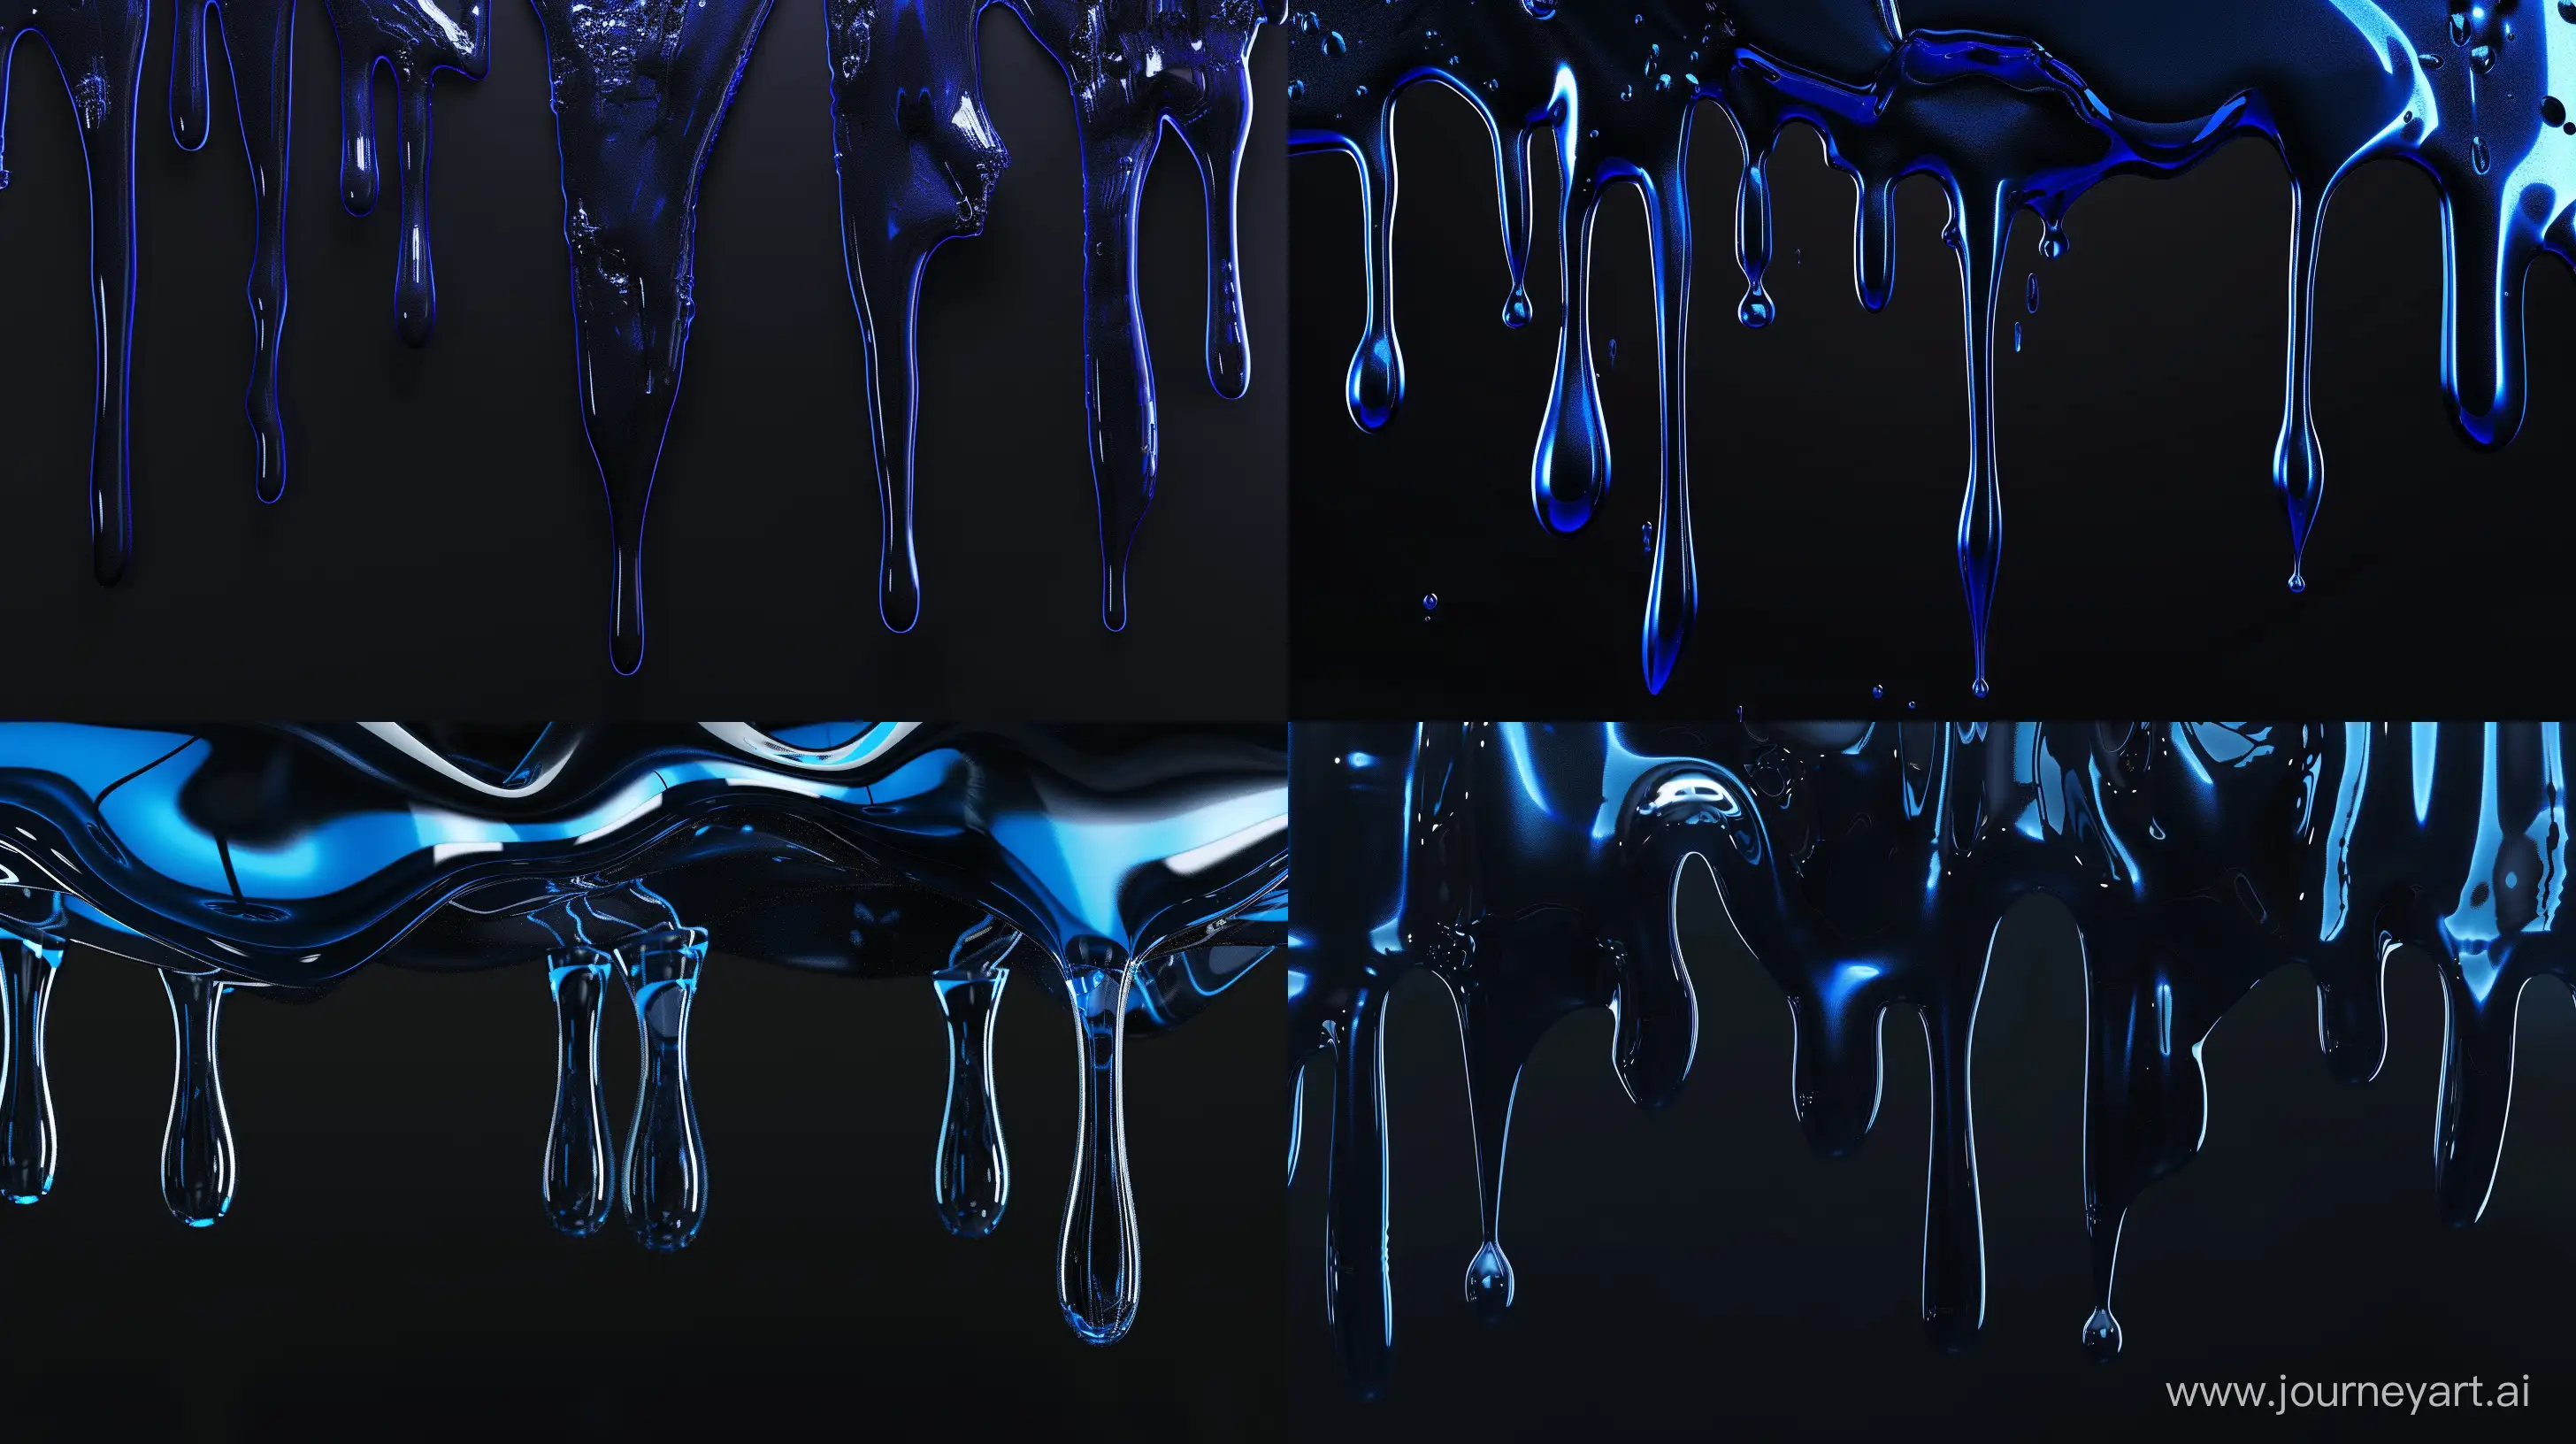 Dripping effect wallpaper, cinema 4D render, wallpaper, abstract shapes, liquid, glass, 16K, deep blue and black, tech wallpaper. --ar 16:9